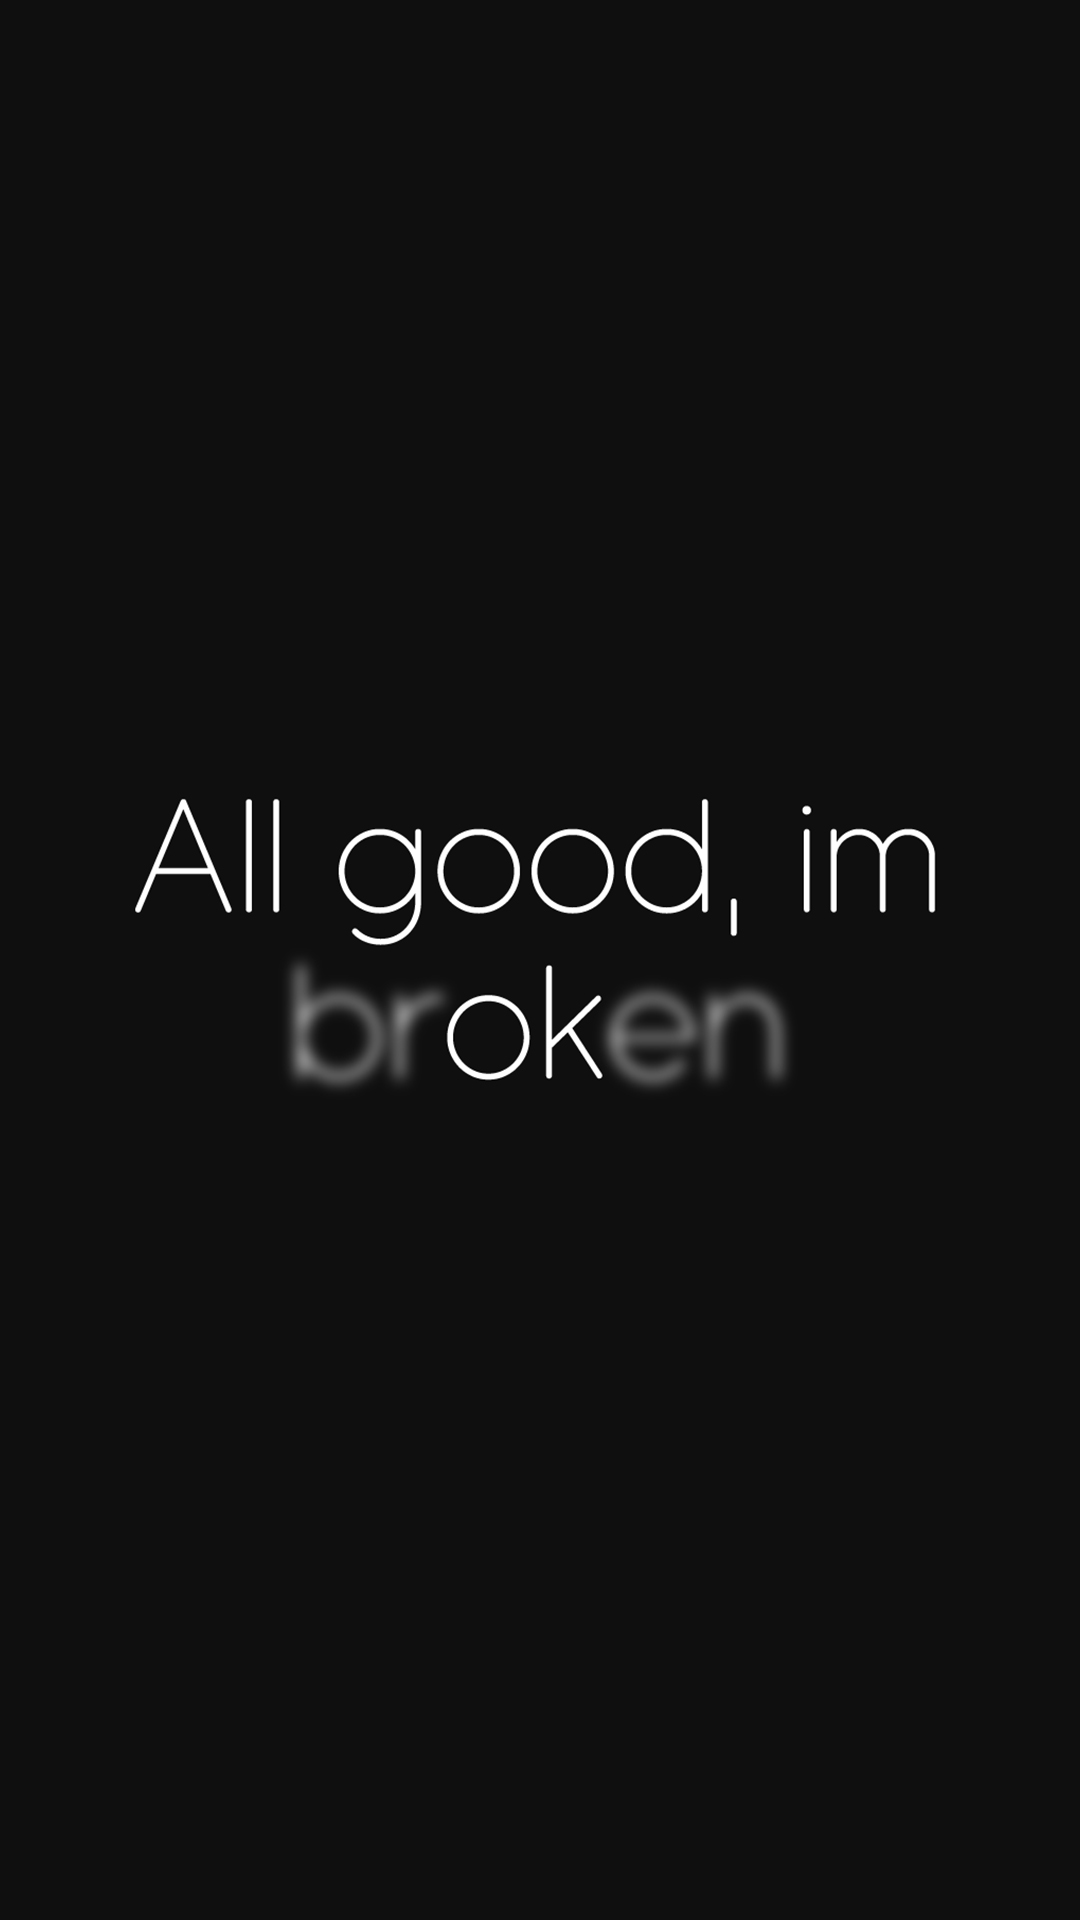 L am broken. Обои i am broken. I am broken обои обои. Черные обои i am broken. I'M broken обои на телефон.